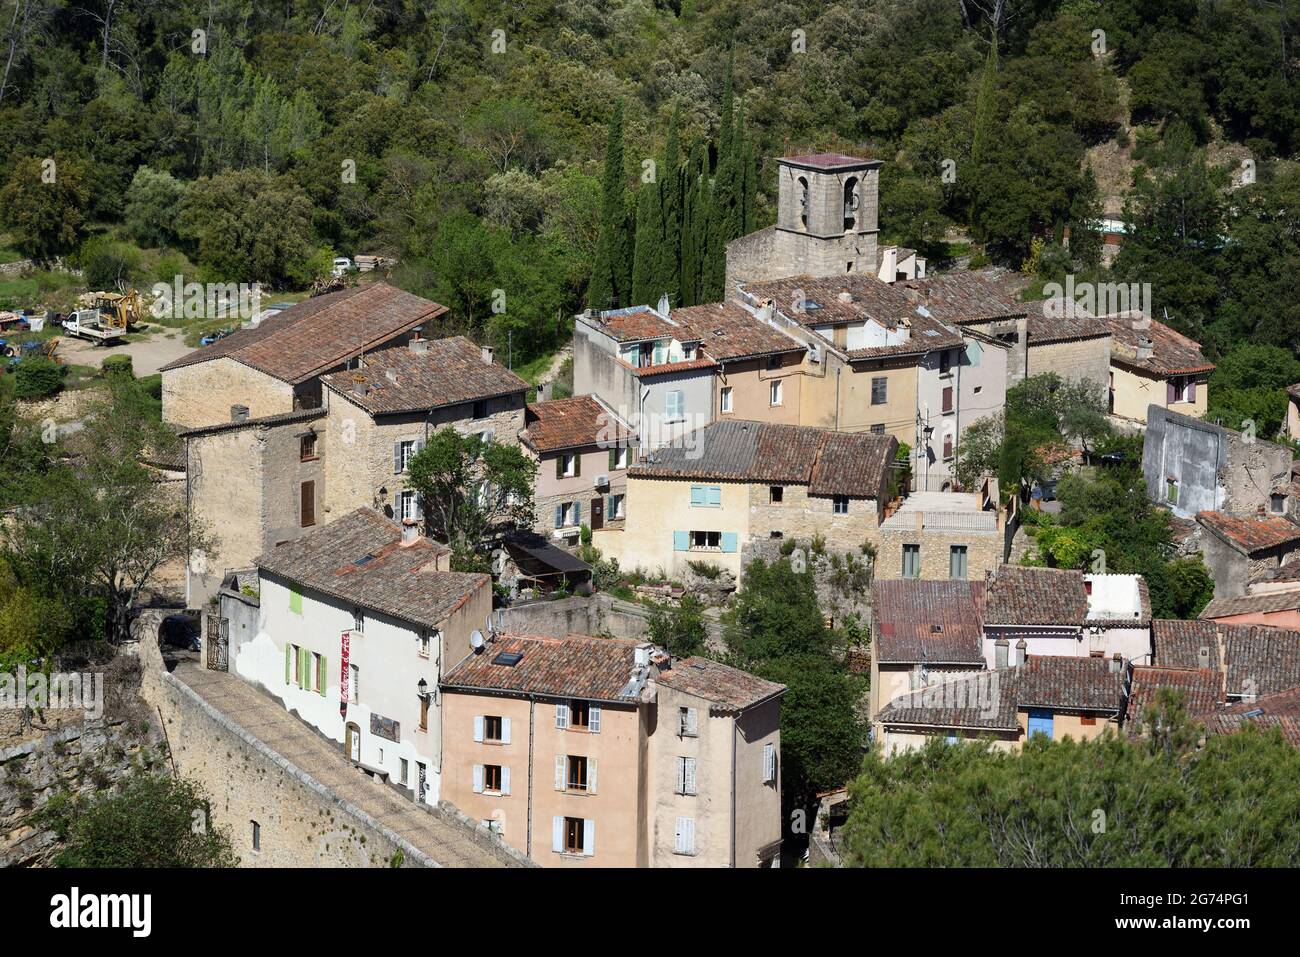 Vue aérienne ou vue en angle sur la vieille ville, le vieux village ou le quartier historique d'Entrecasteaux Var Provence France Banque D'Images